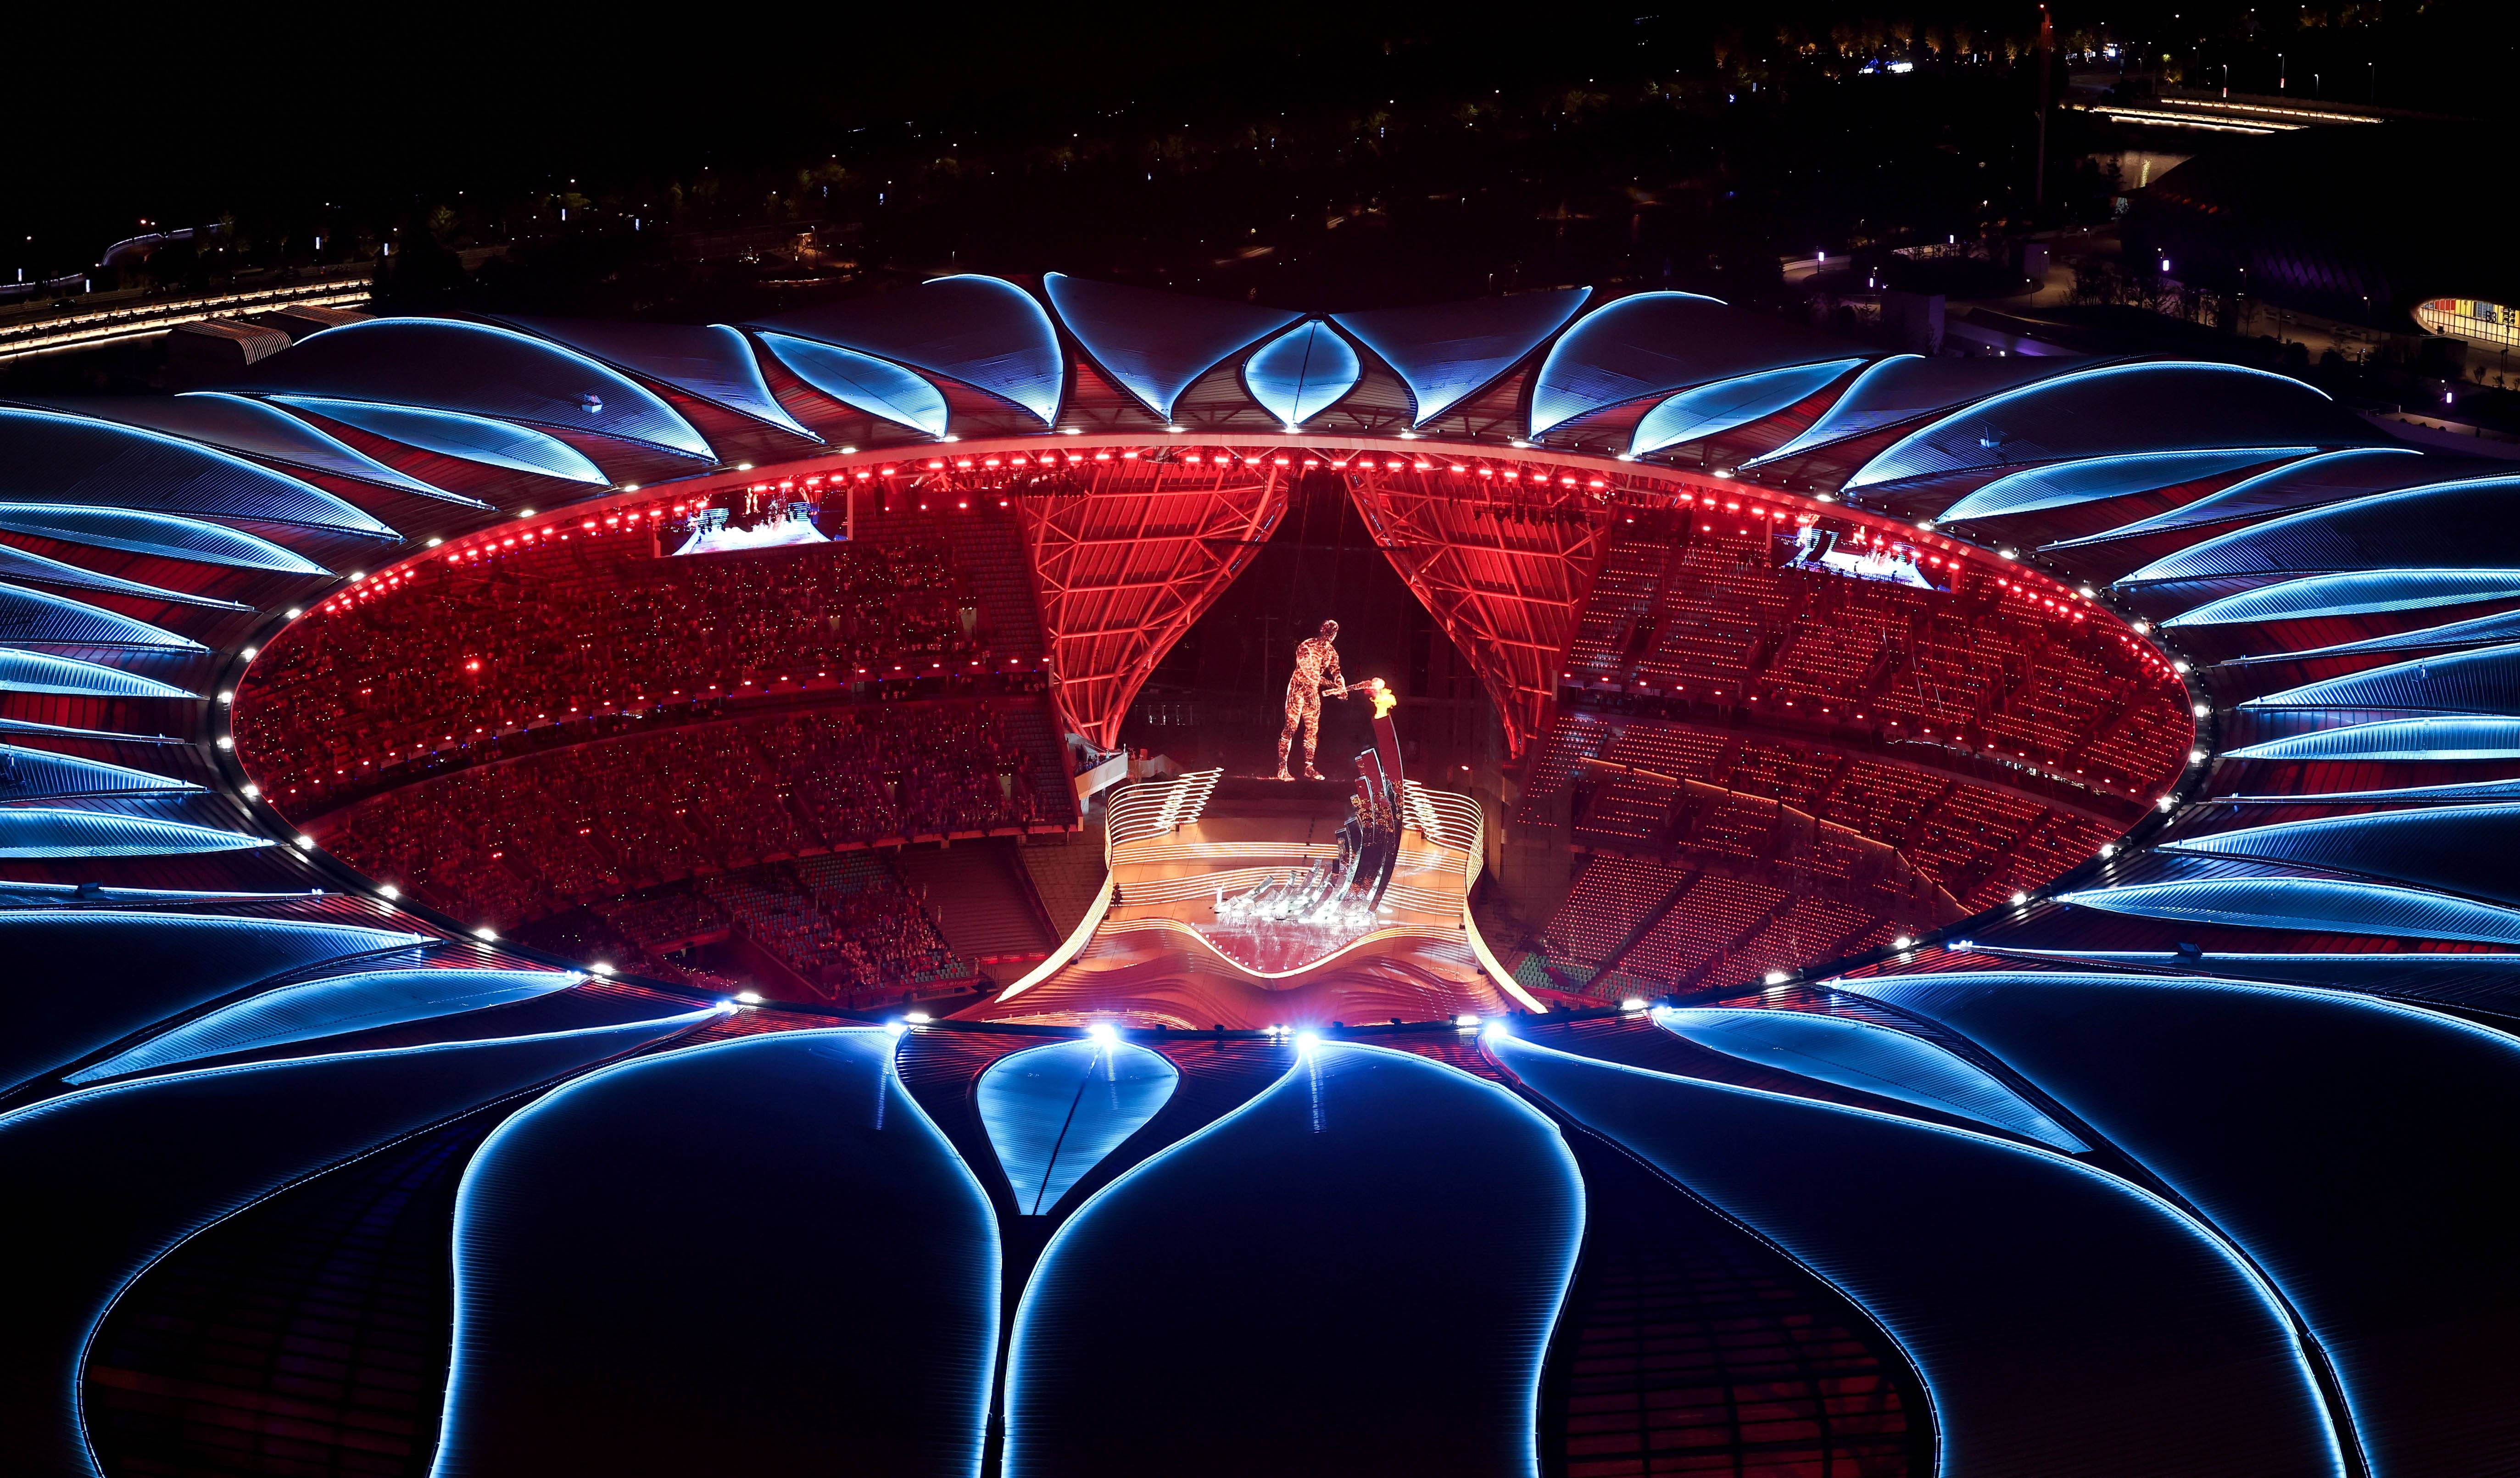 亚运会火炬塔造型图片